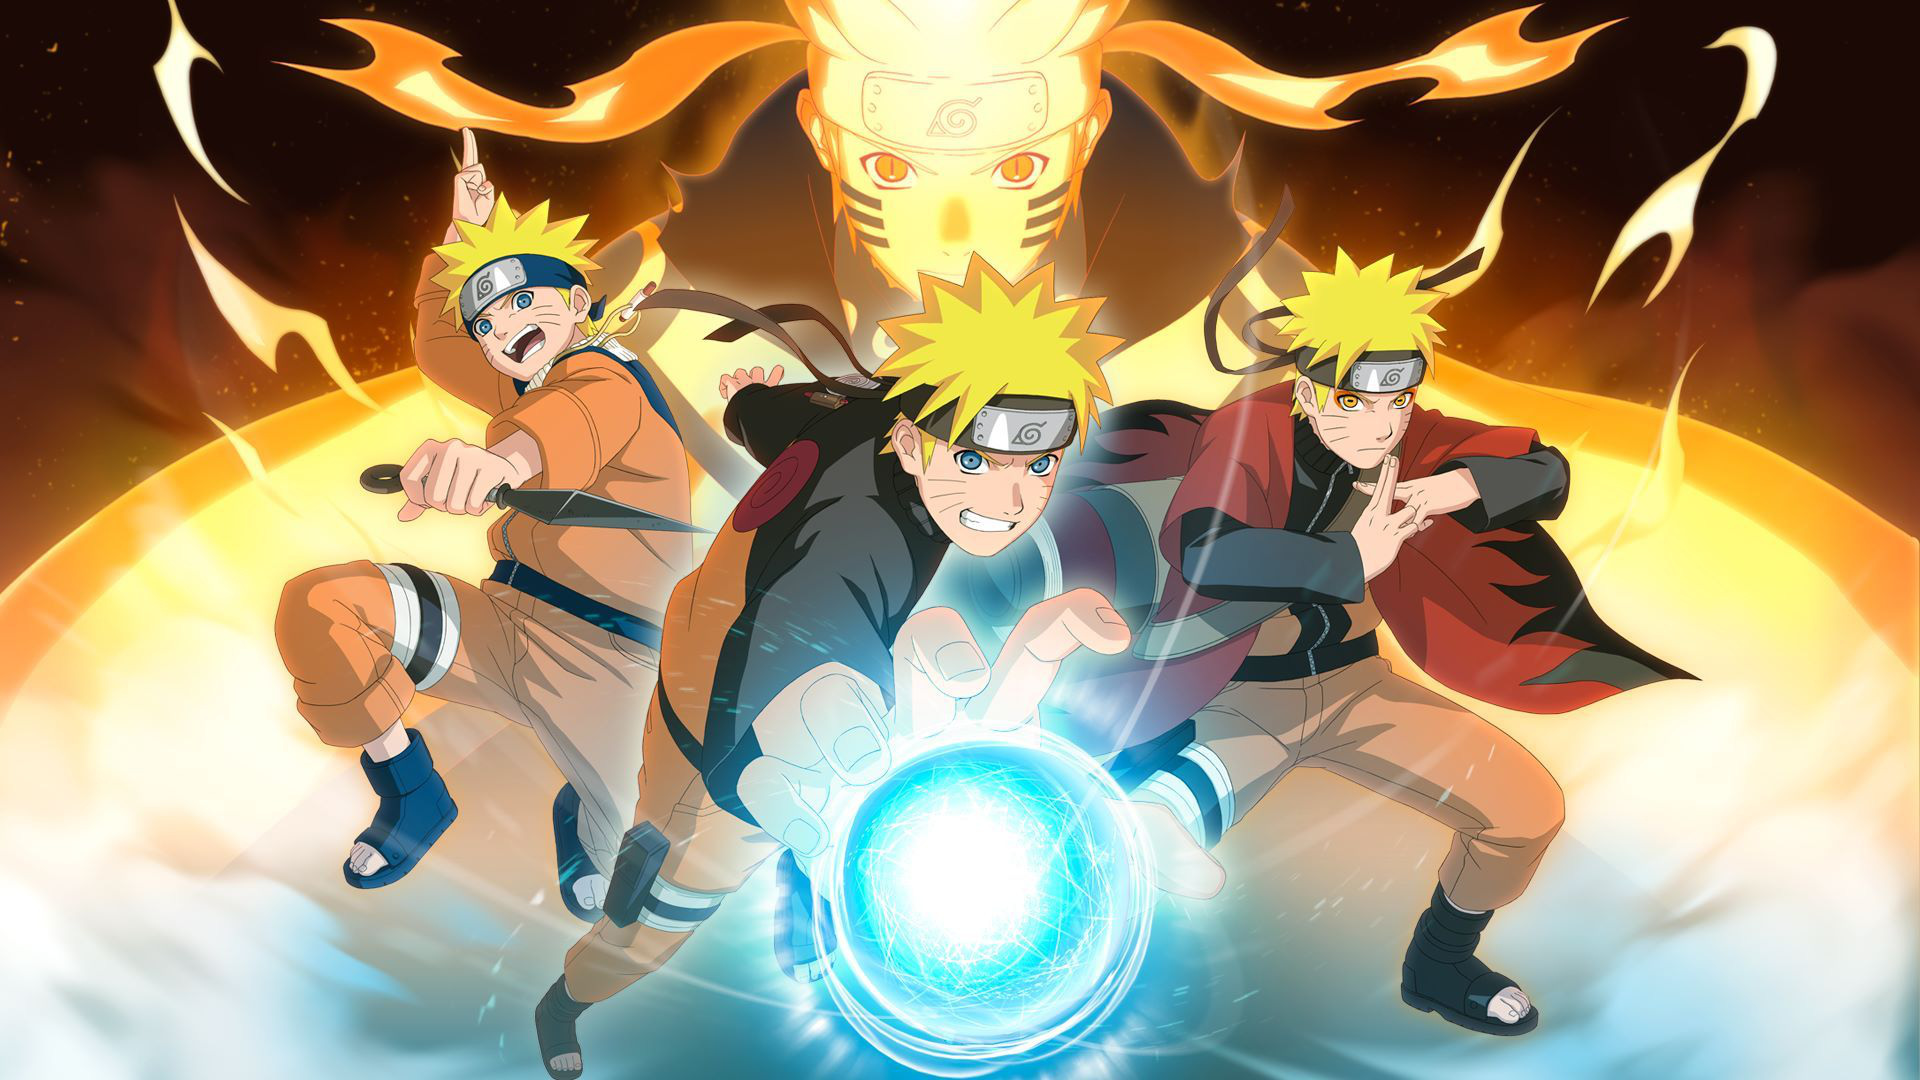 Tin vui: Naruto Shippuden là bộ Anime được xem nhiều nhất trong 1 thập kỉ  qua